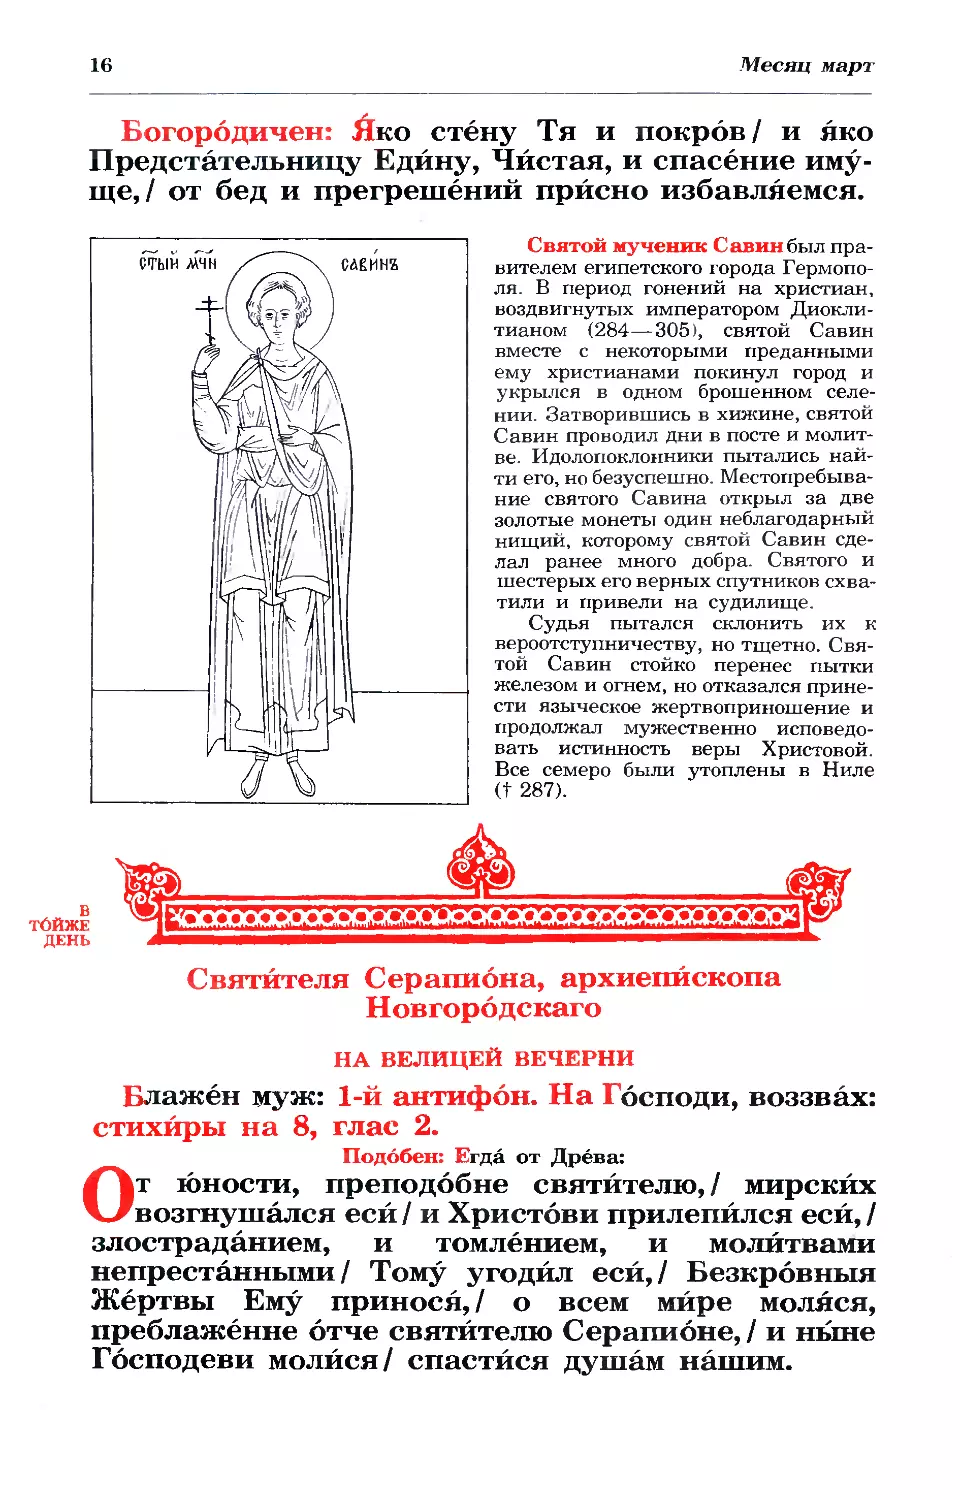 синаксарь
16. + Свт. Серапиона, архиеп. Новгородского